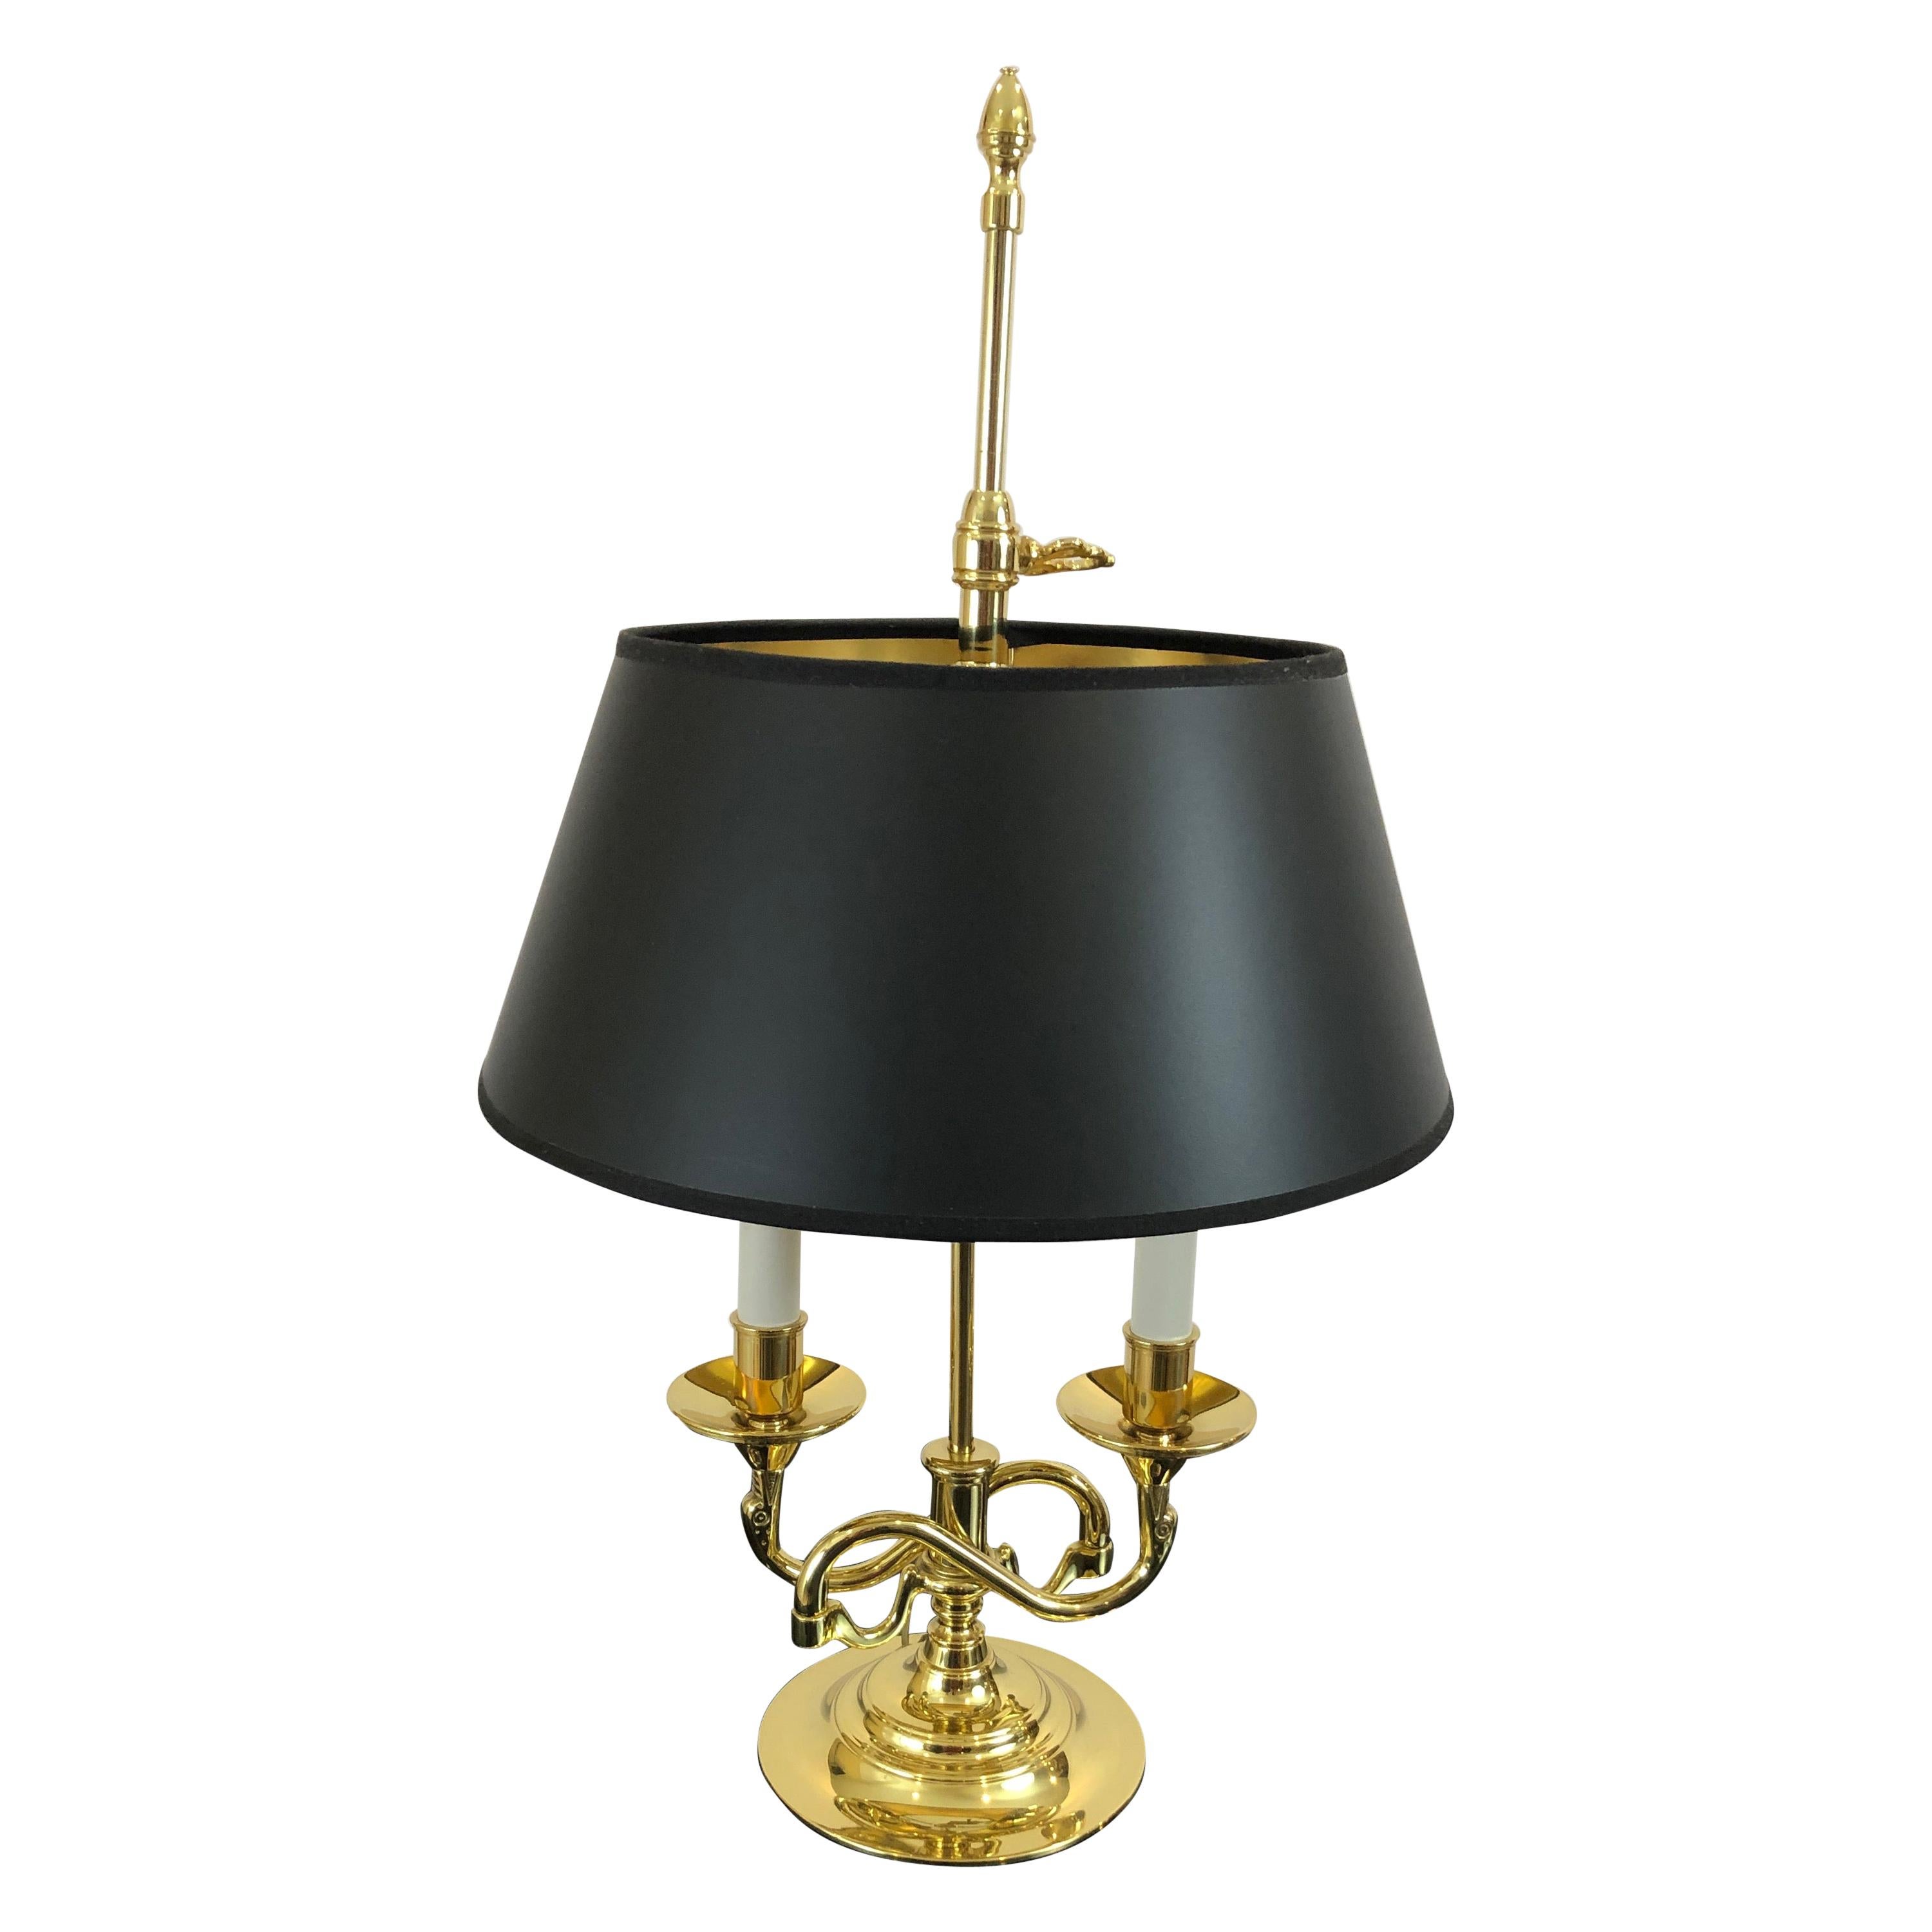 2 Arm Brass Table Lamp By Baldwin, Baldwin Brass Candelabra Desk Lamp